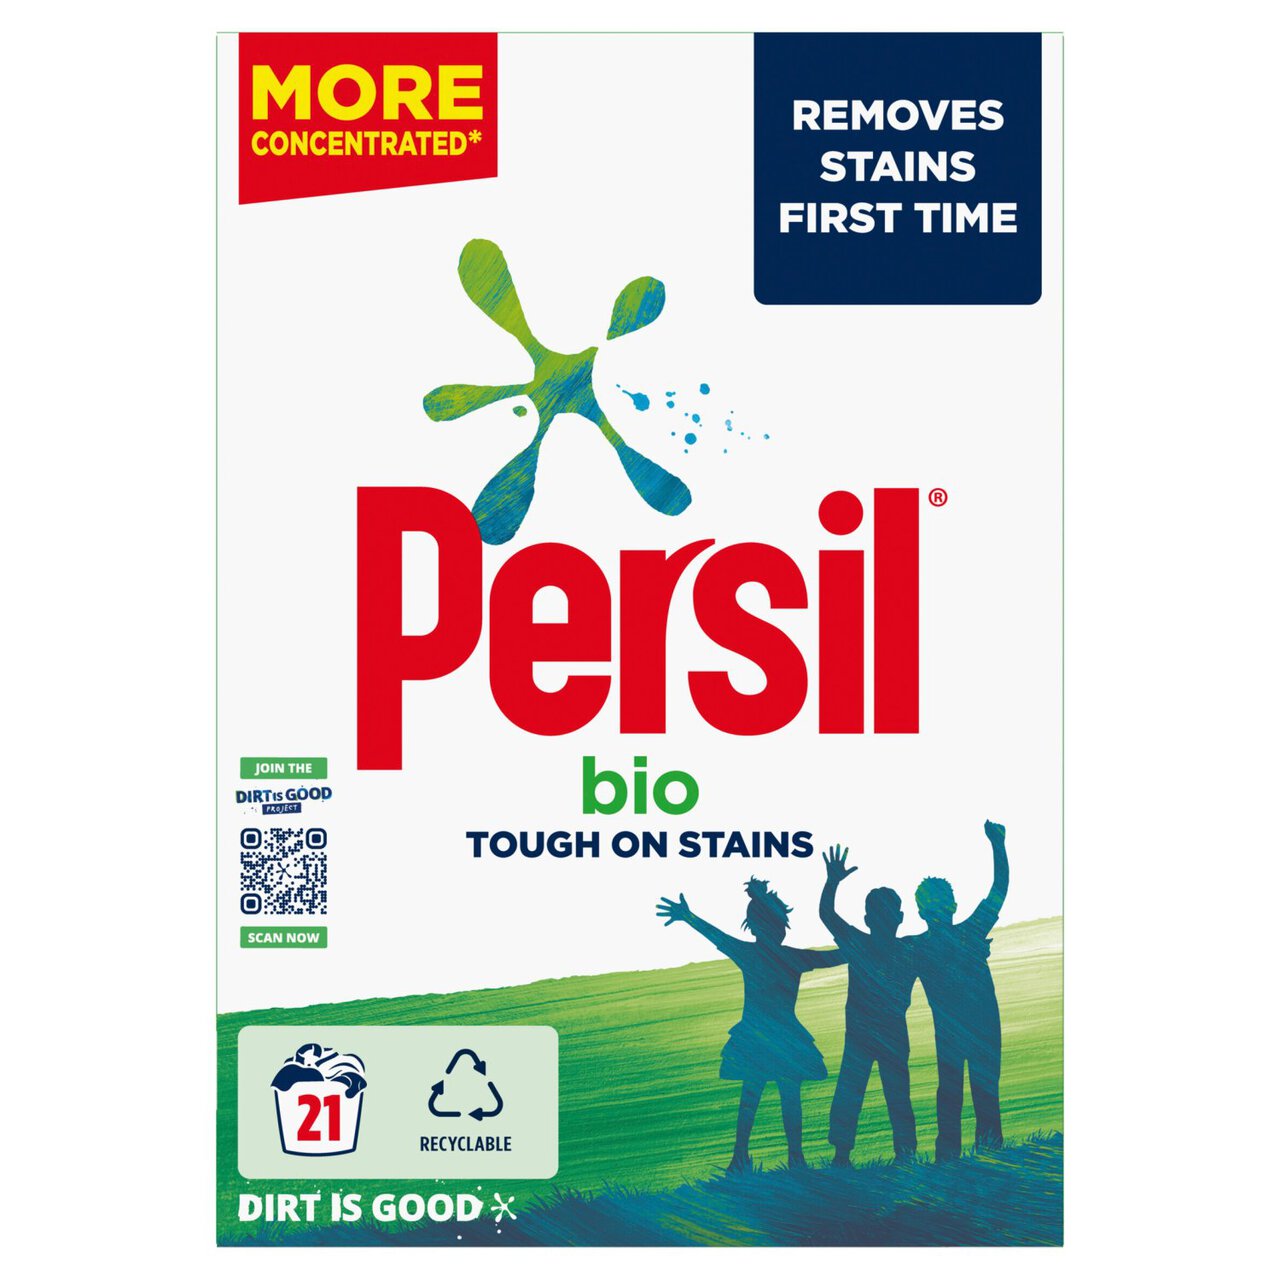 Persil Bio stain Fabric Cleaning Washing Powder 21 Wash 1.05kg